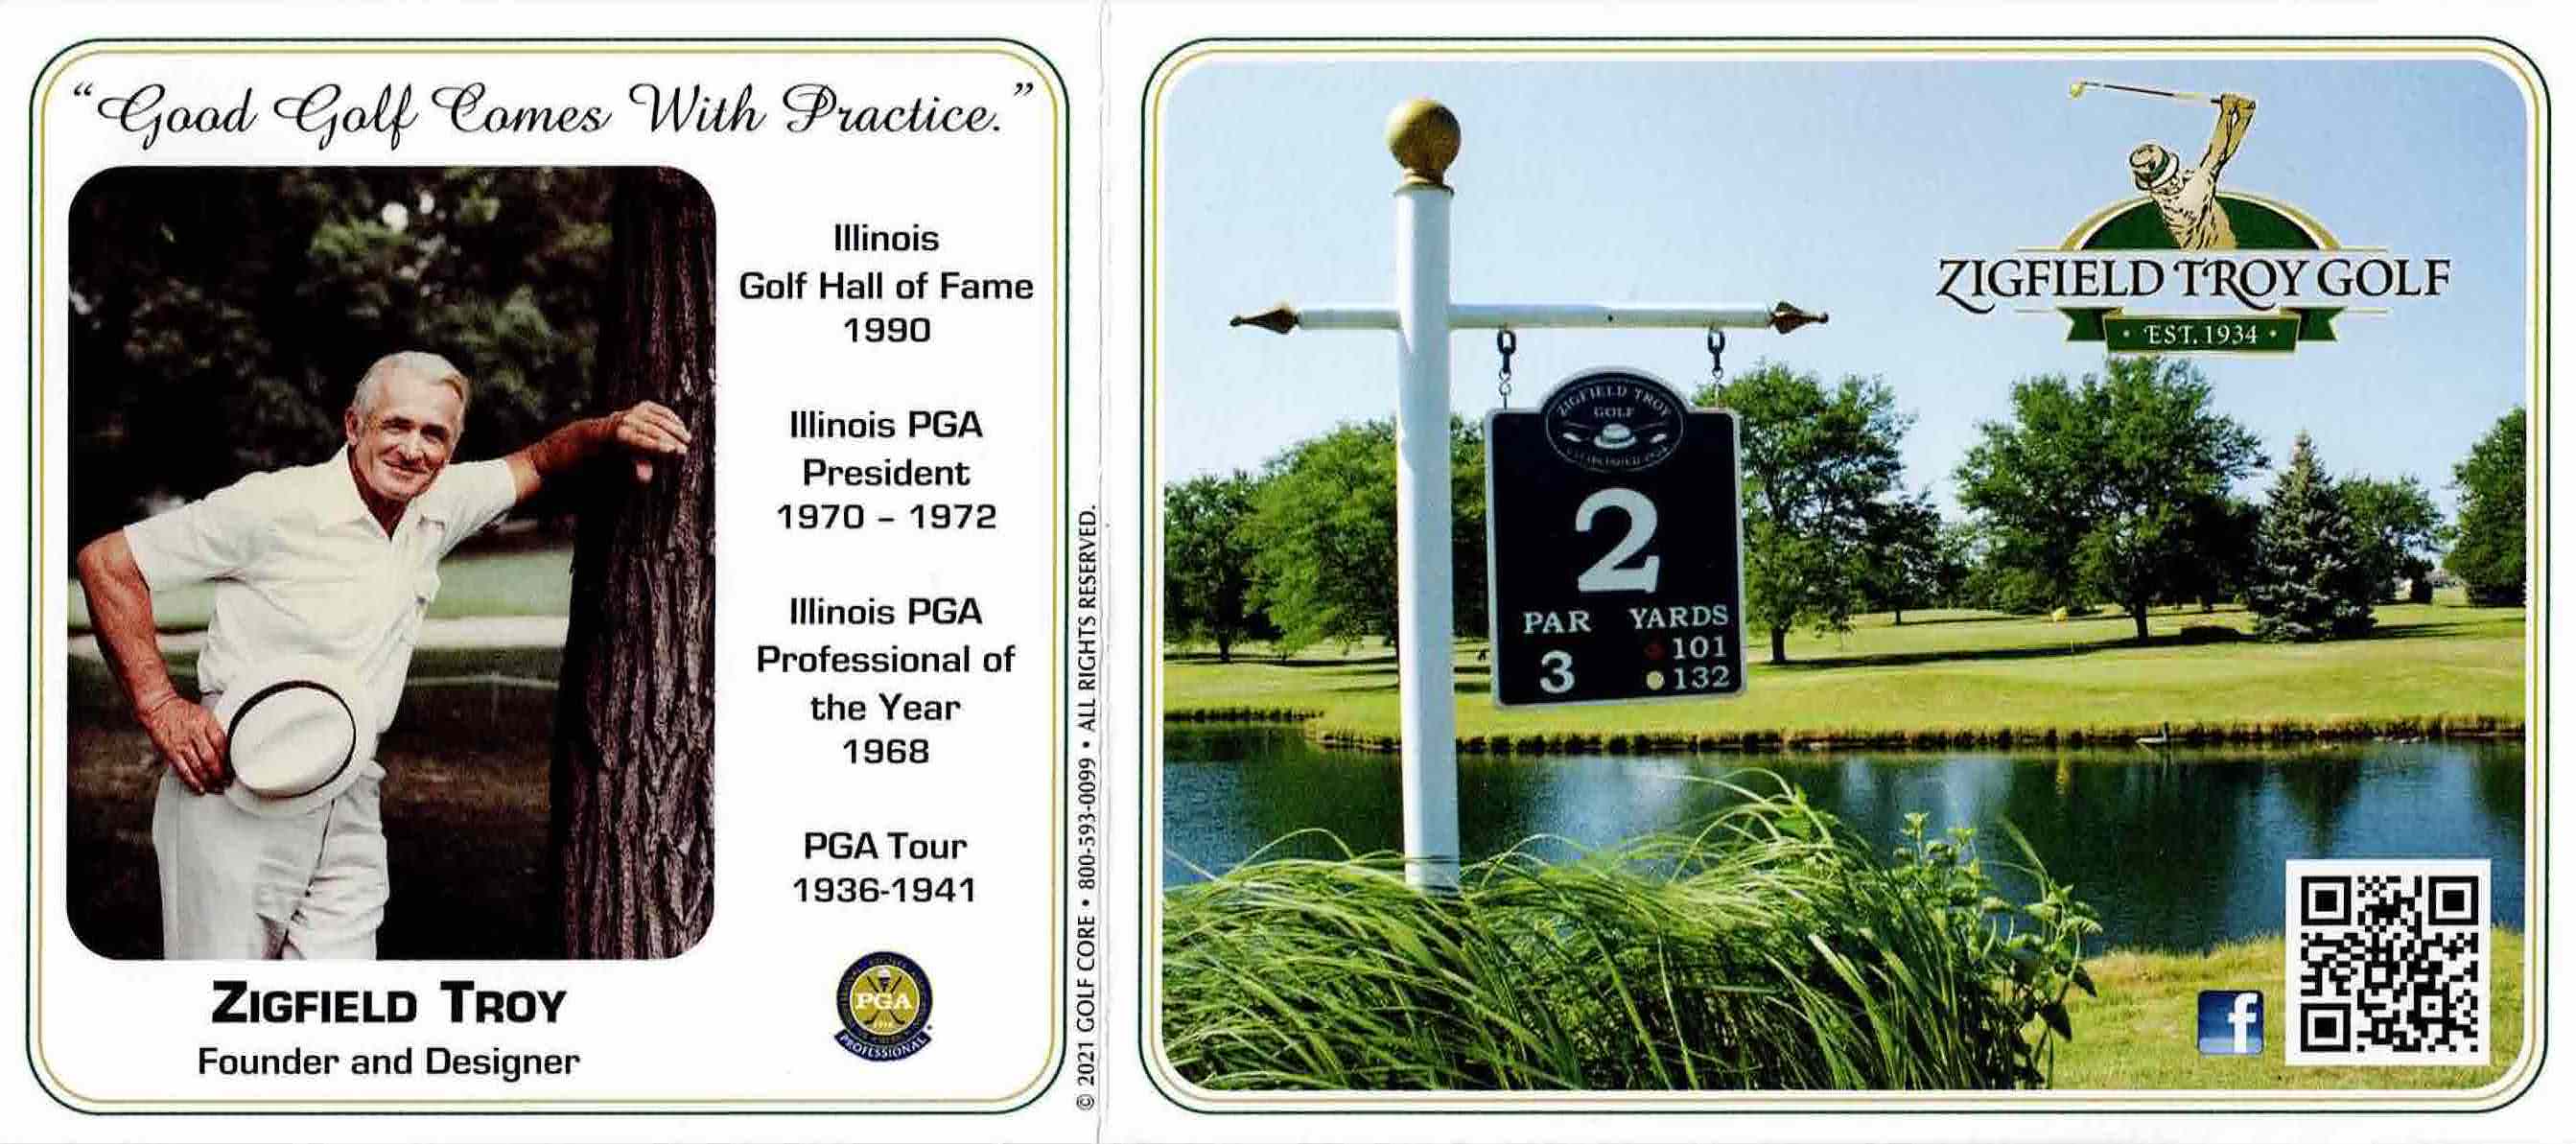 Scan of the scorecard from Zigfield Troy Golf in Woodridge, Illinois. 